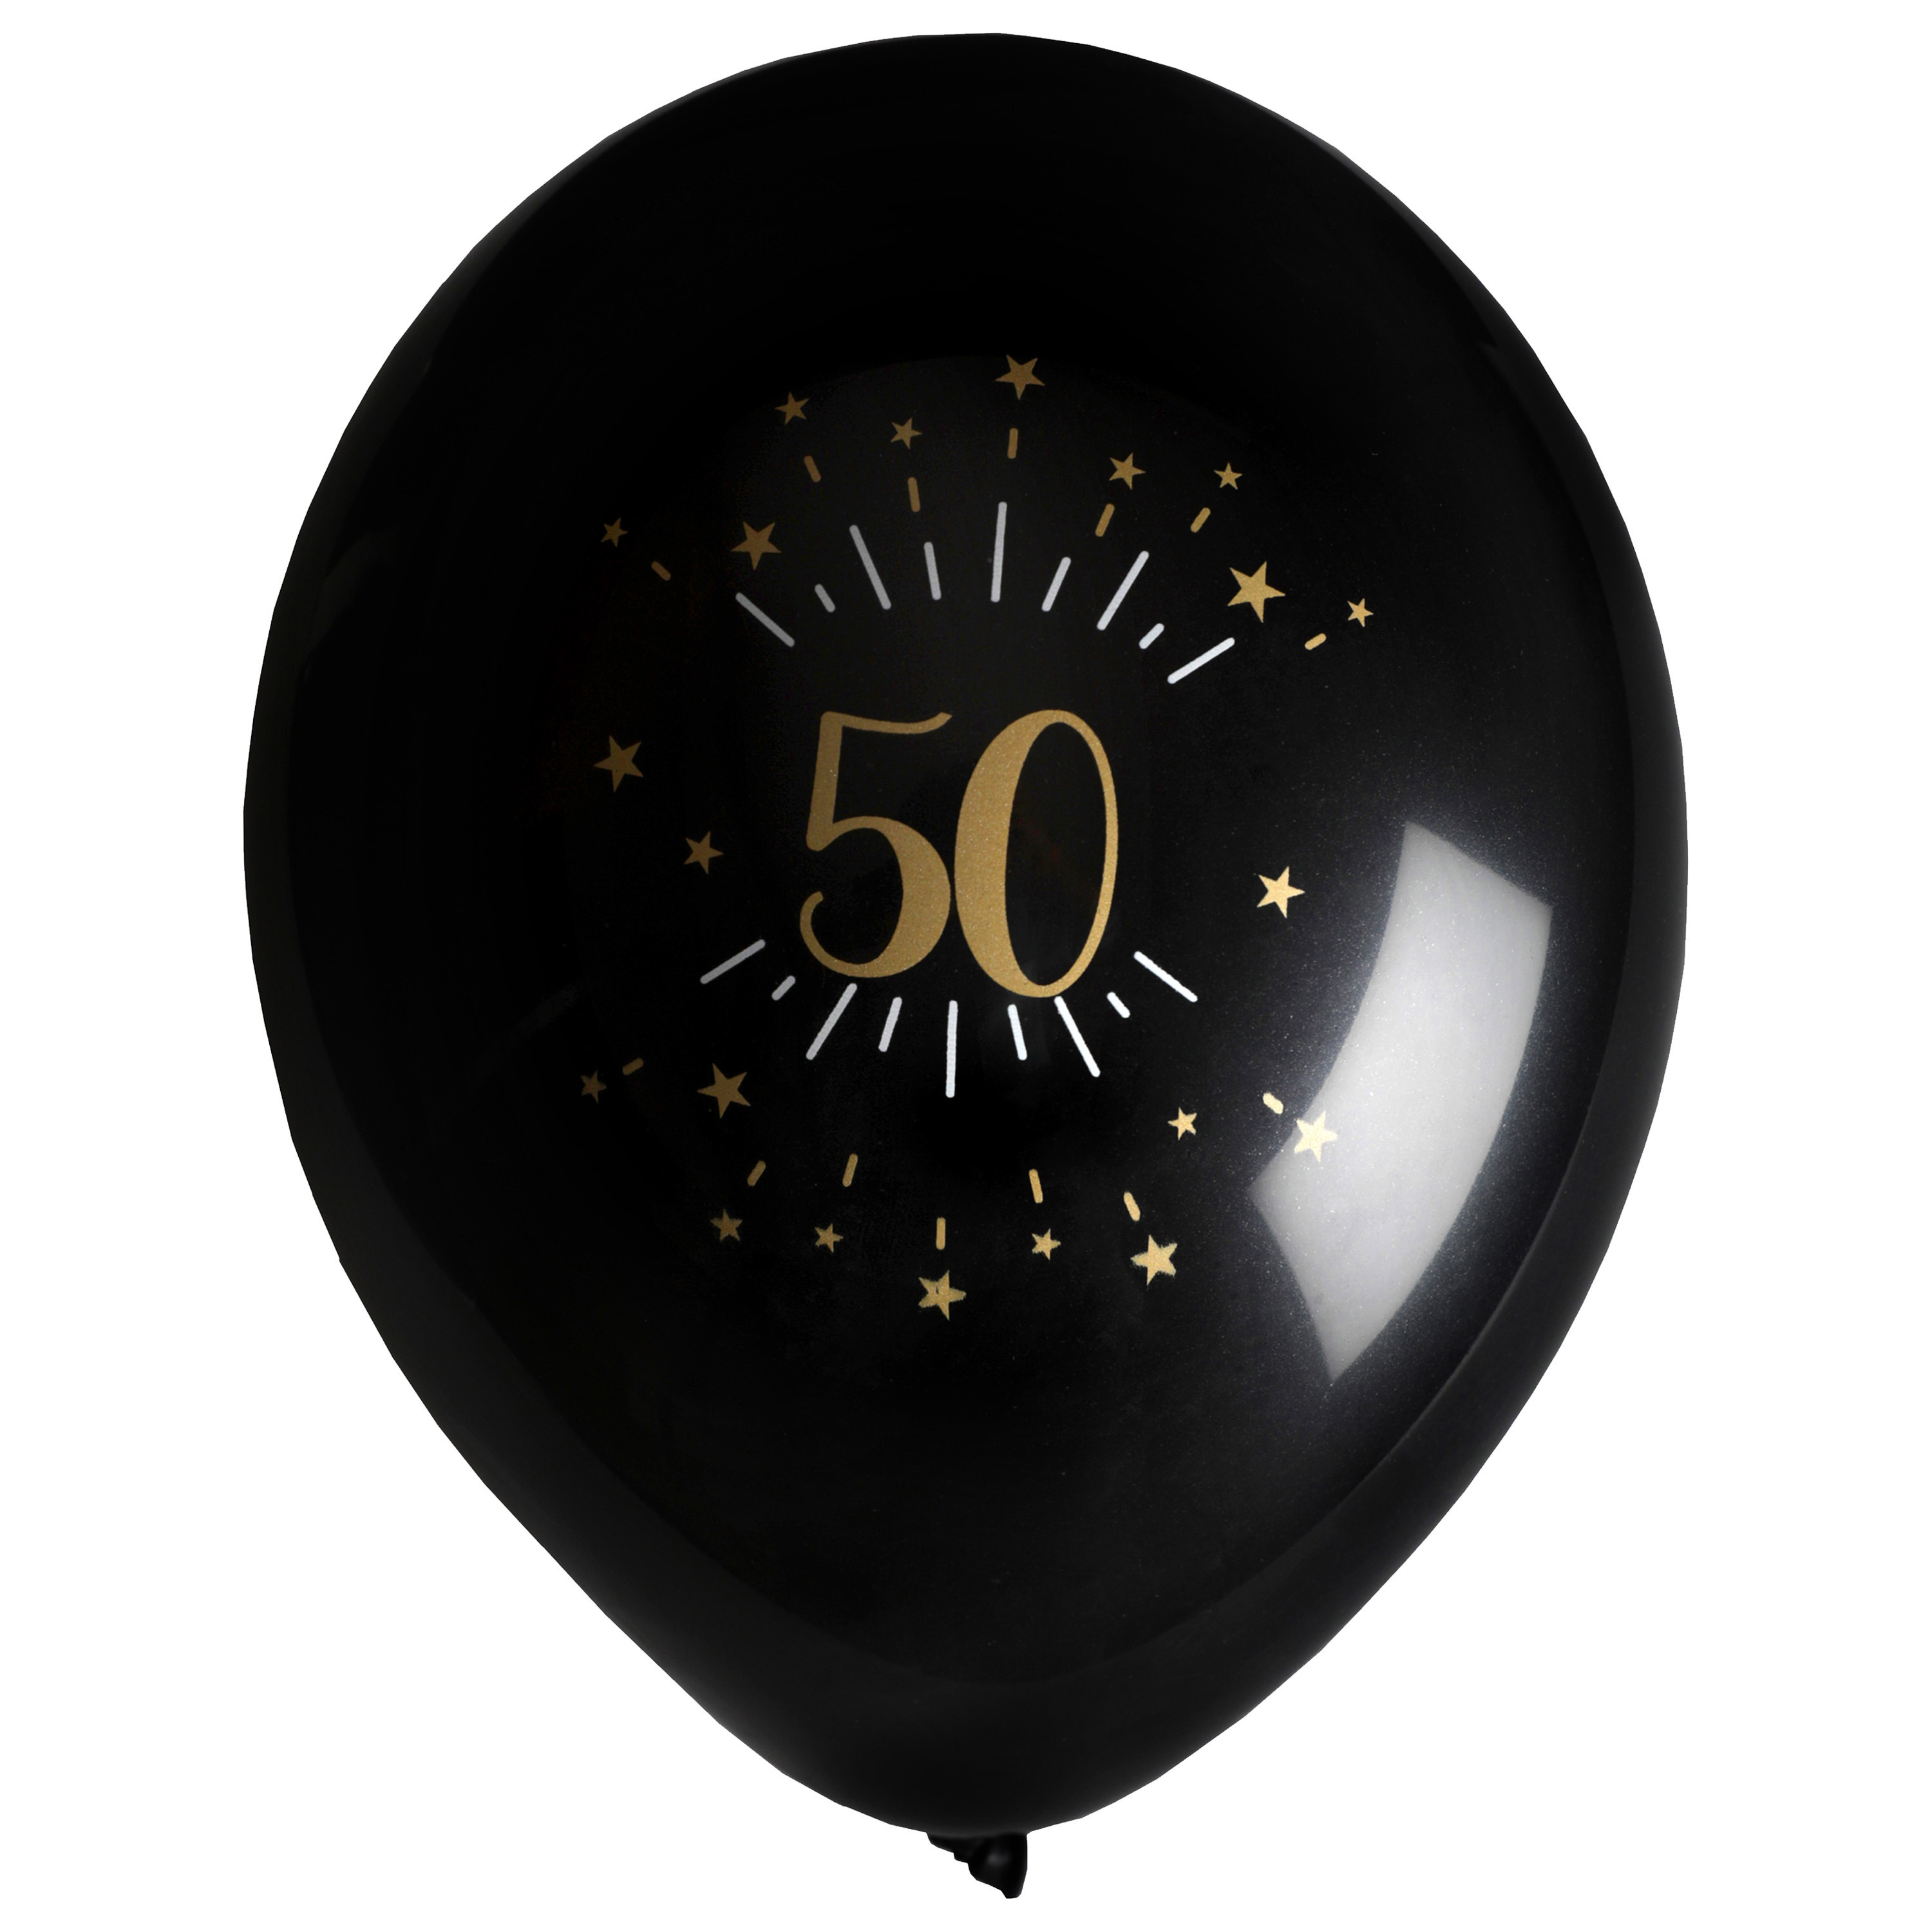 Santex verjaardag leeftijd ballonnen 50 jaar 8x stuks zwart-goud 23 cm Abraham-Sarah